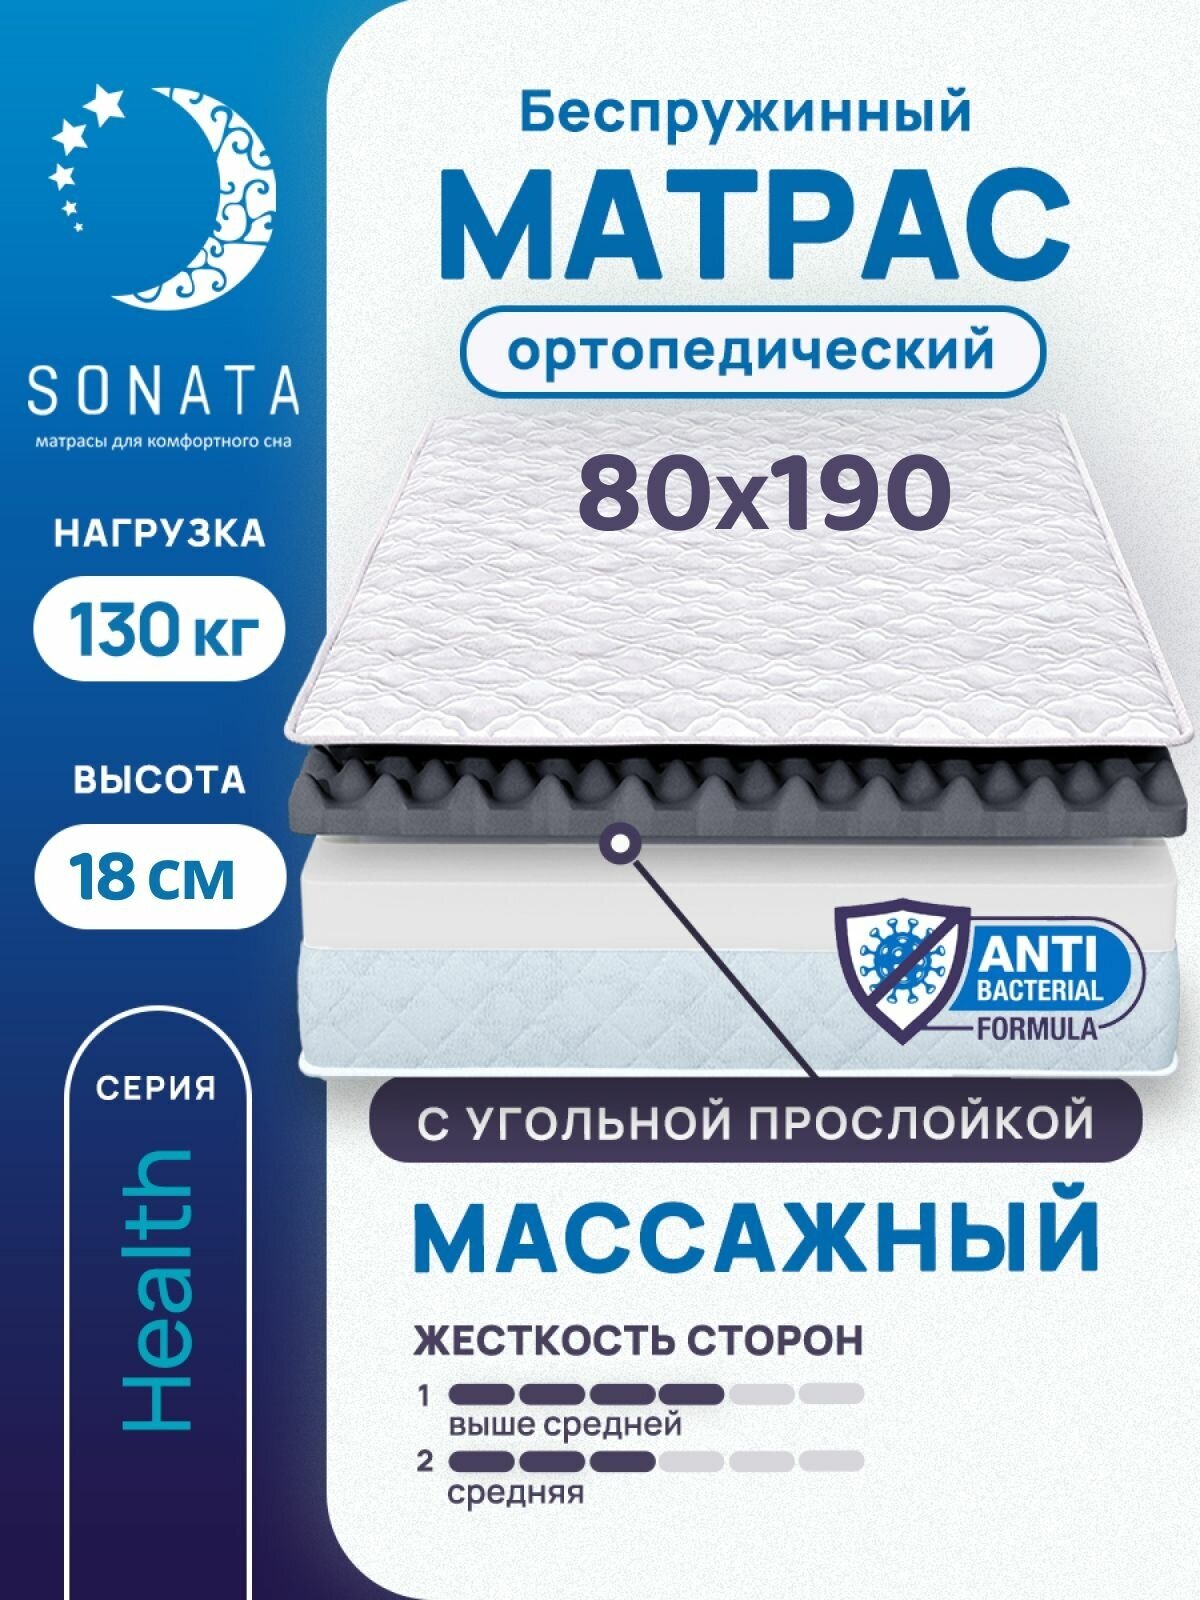 Матрас 80х190 см SONATA, беспружинный, односпальный, матрац для кровати, высота 18 см, с массажным эффектом